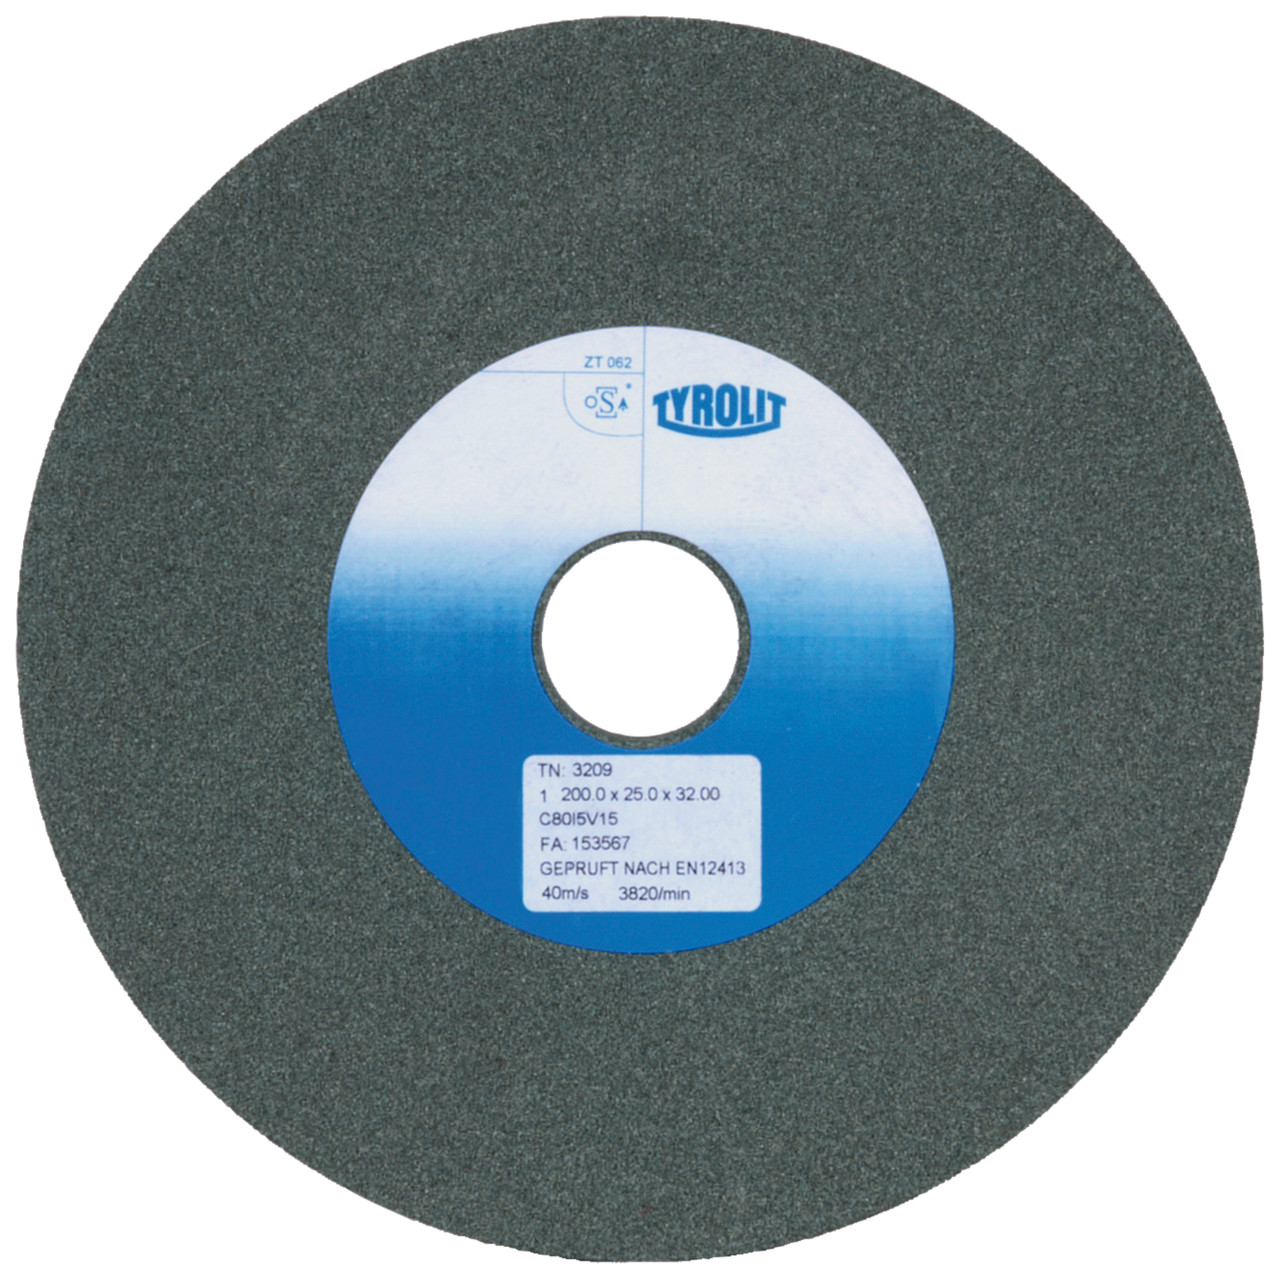 TYROLIT discos abrasivos cerámicos convencionales DxDxH 150x20x20 Para metal duro y fundición, forma: 1, Art. 2658